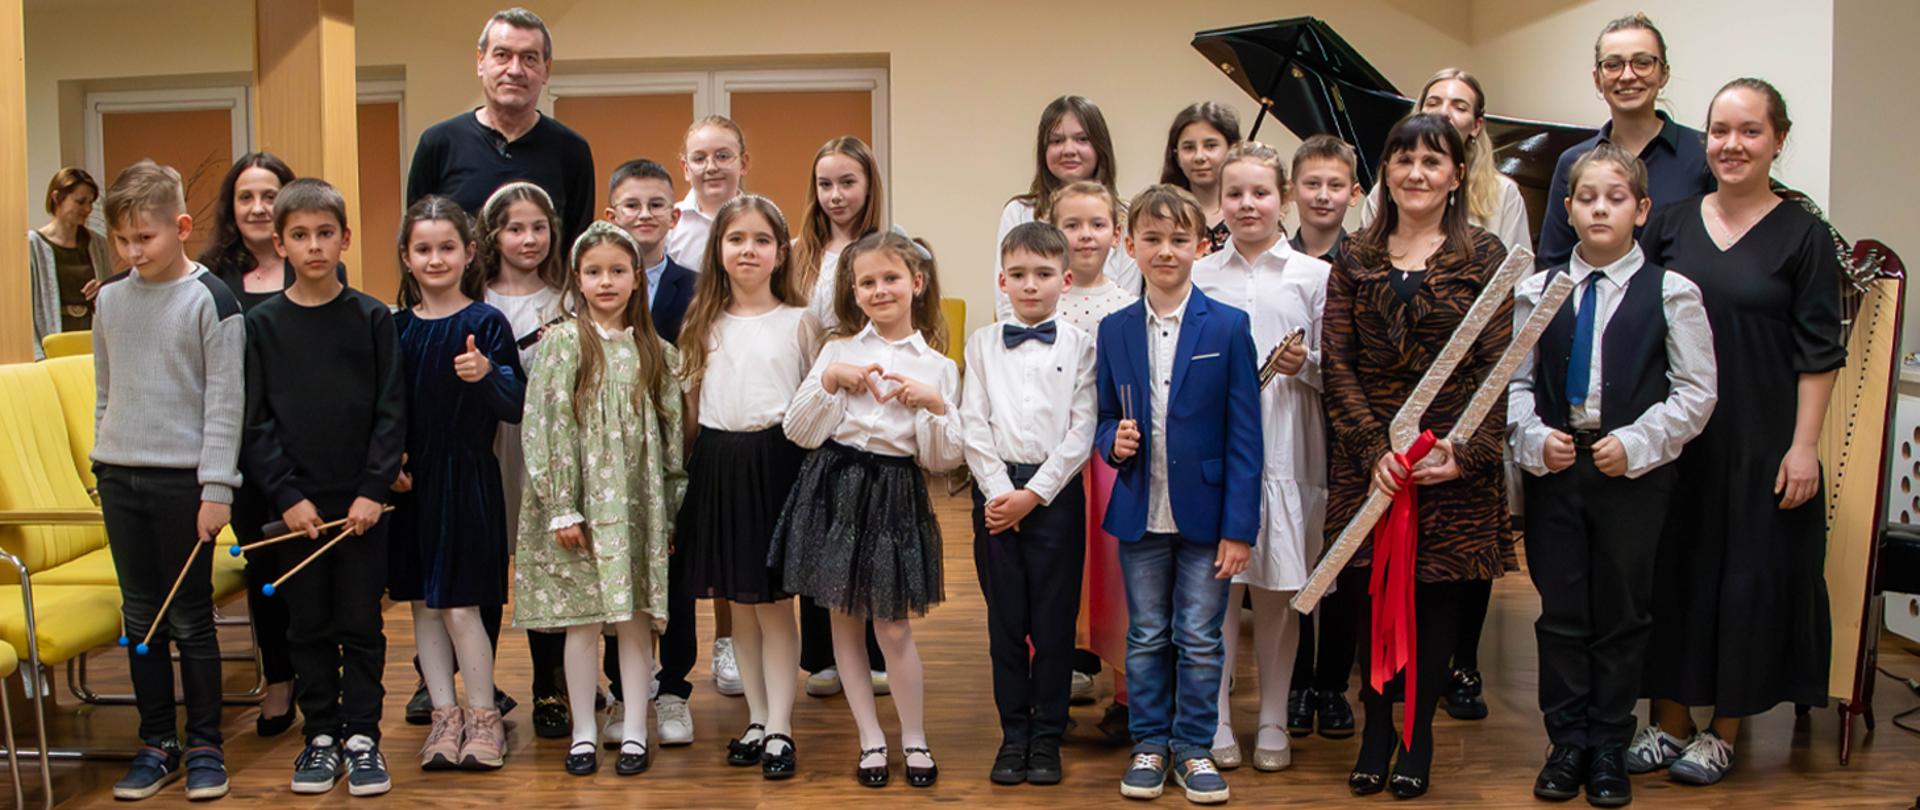 Na zdjęciu grupa kilkunastu osób, dorośli i dzieci, stoją w auli szkoły, za nimi stoi fortepian.